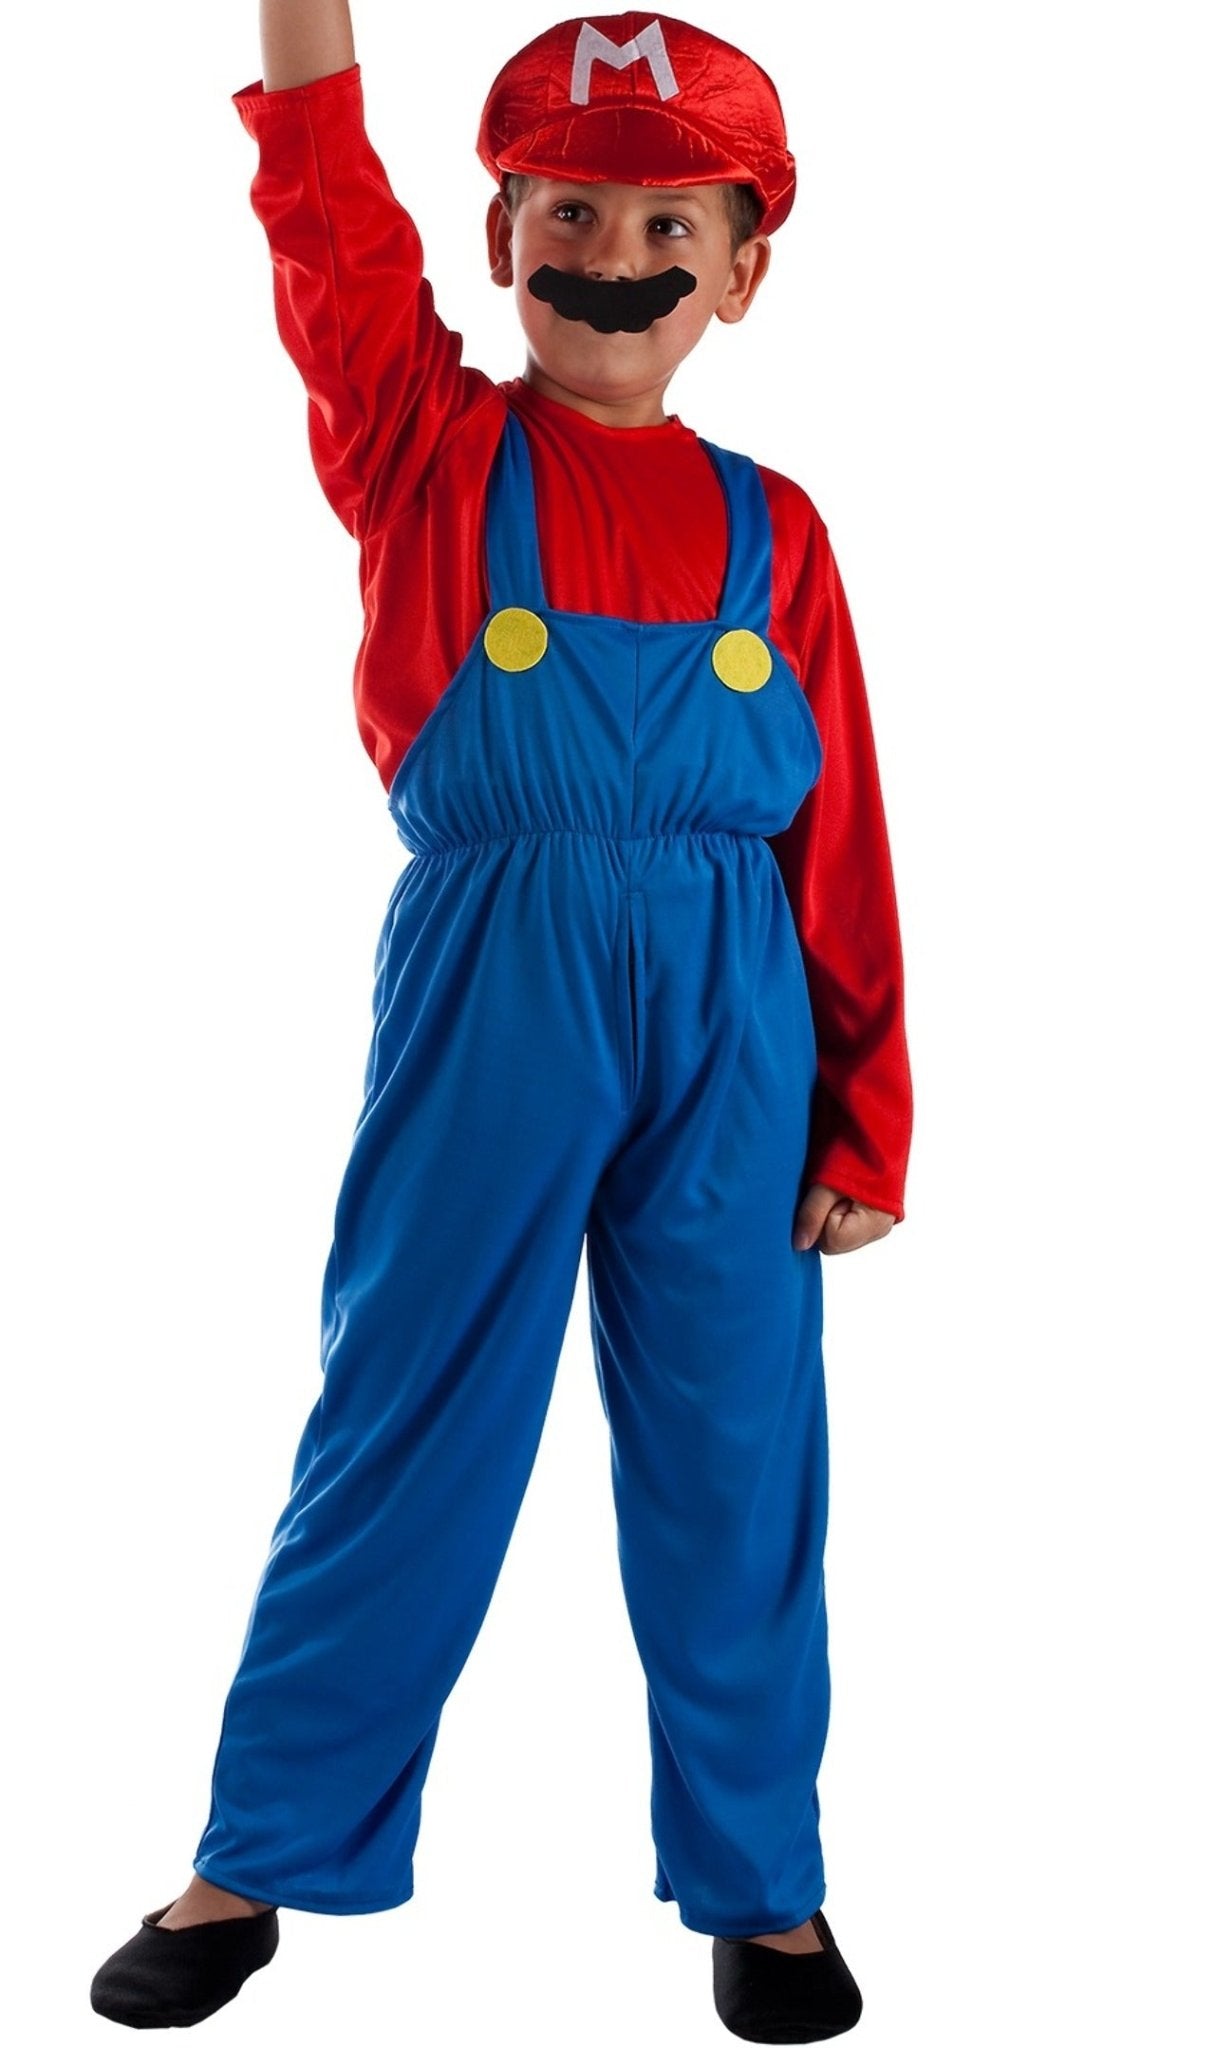 Comprar online Disfraz de Super Mario Gorra para niño